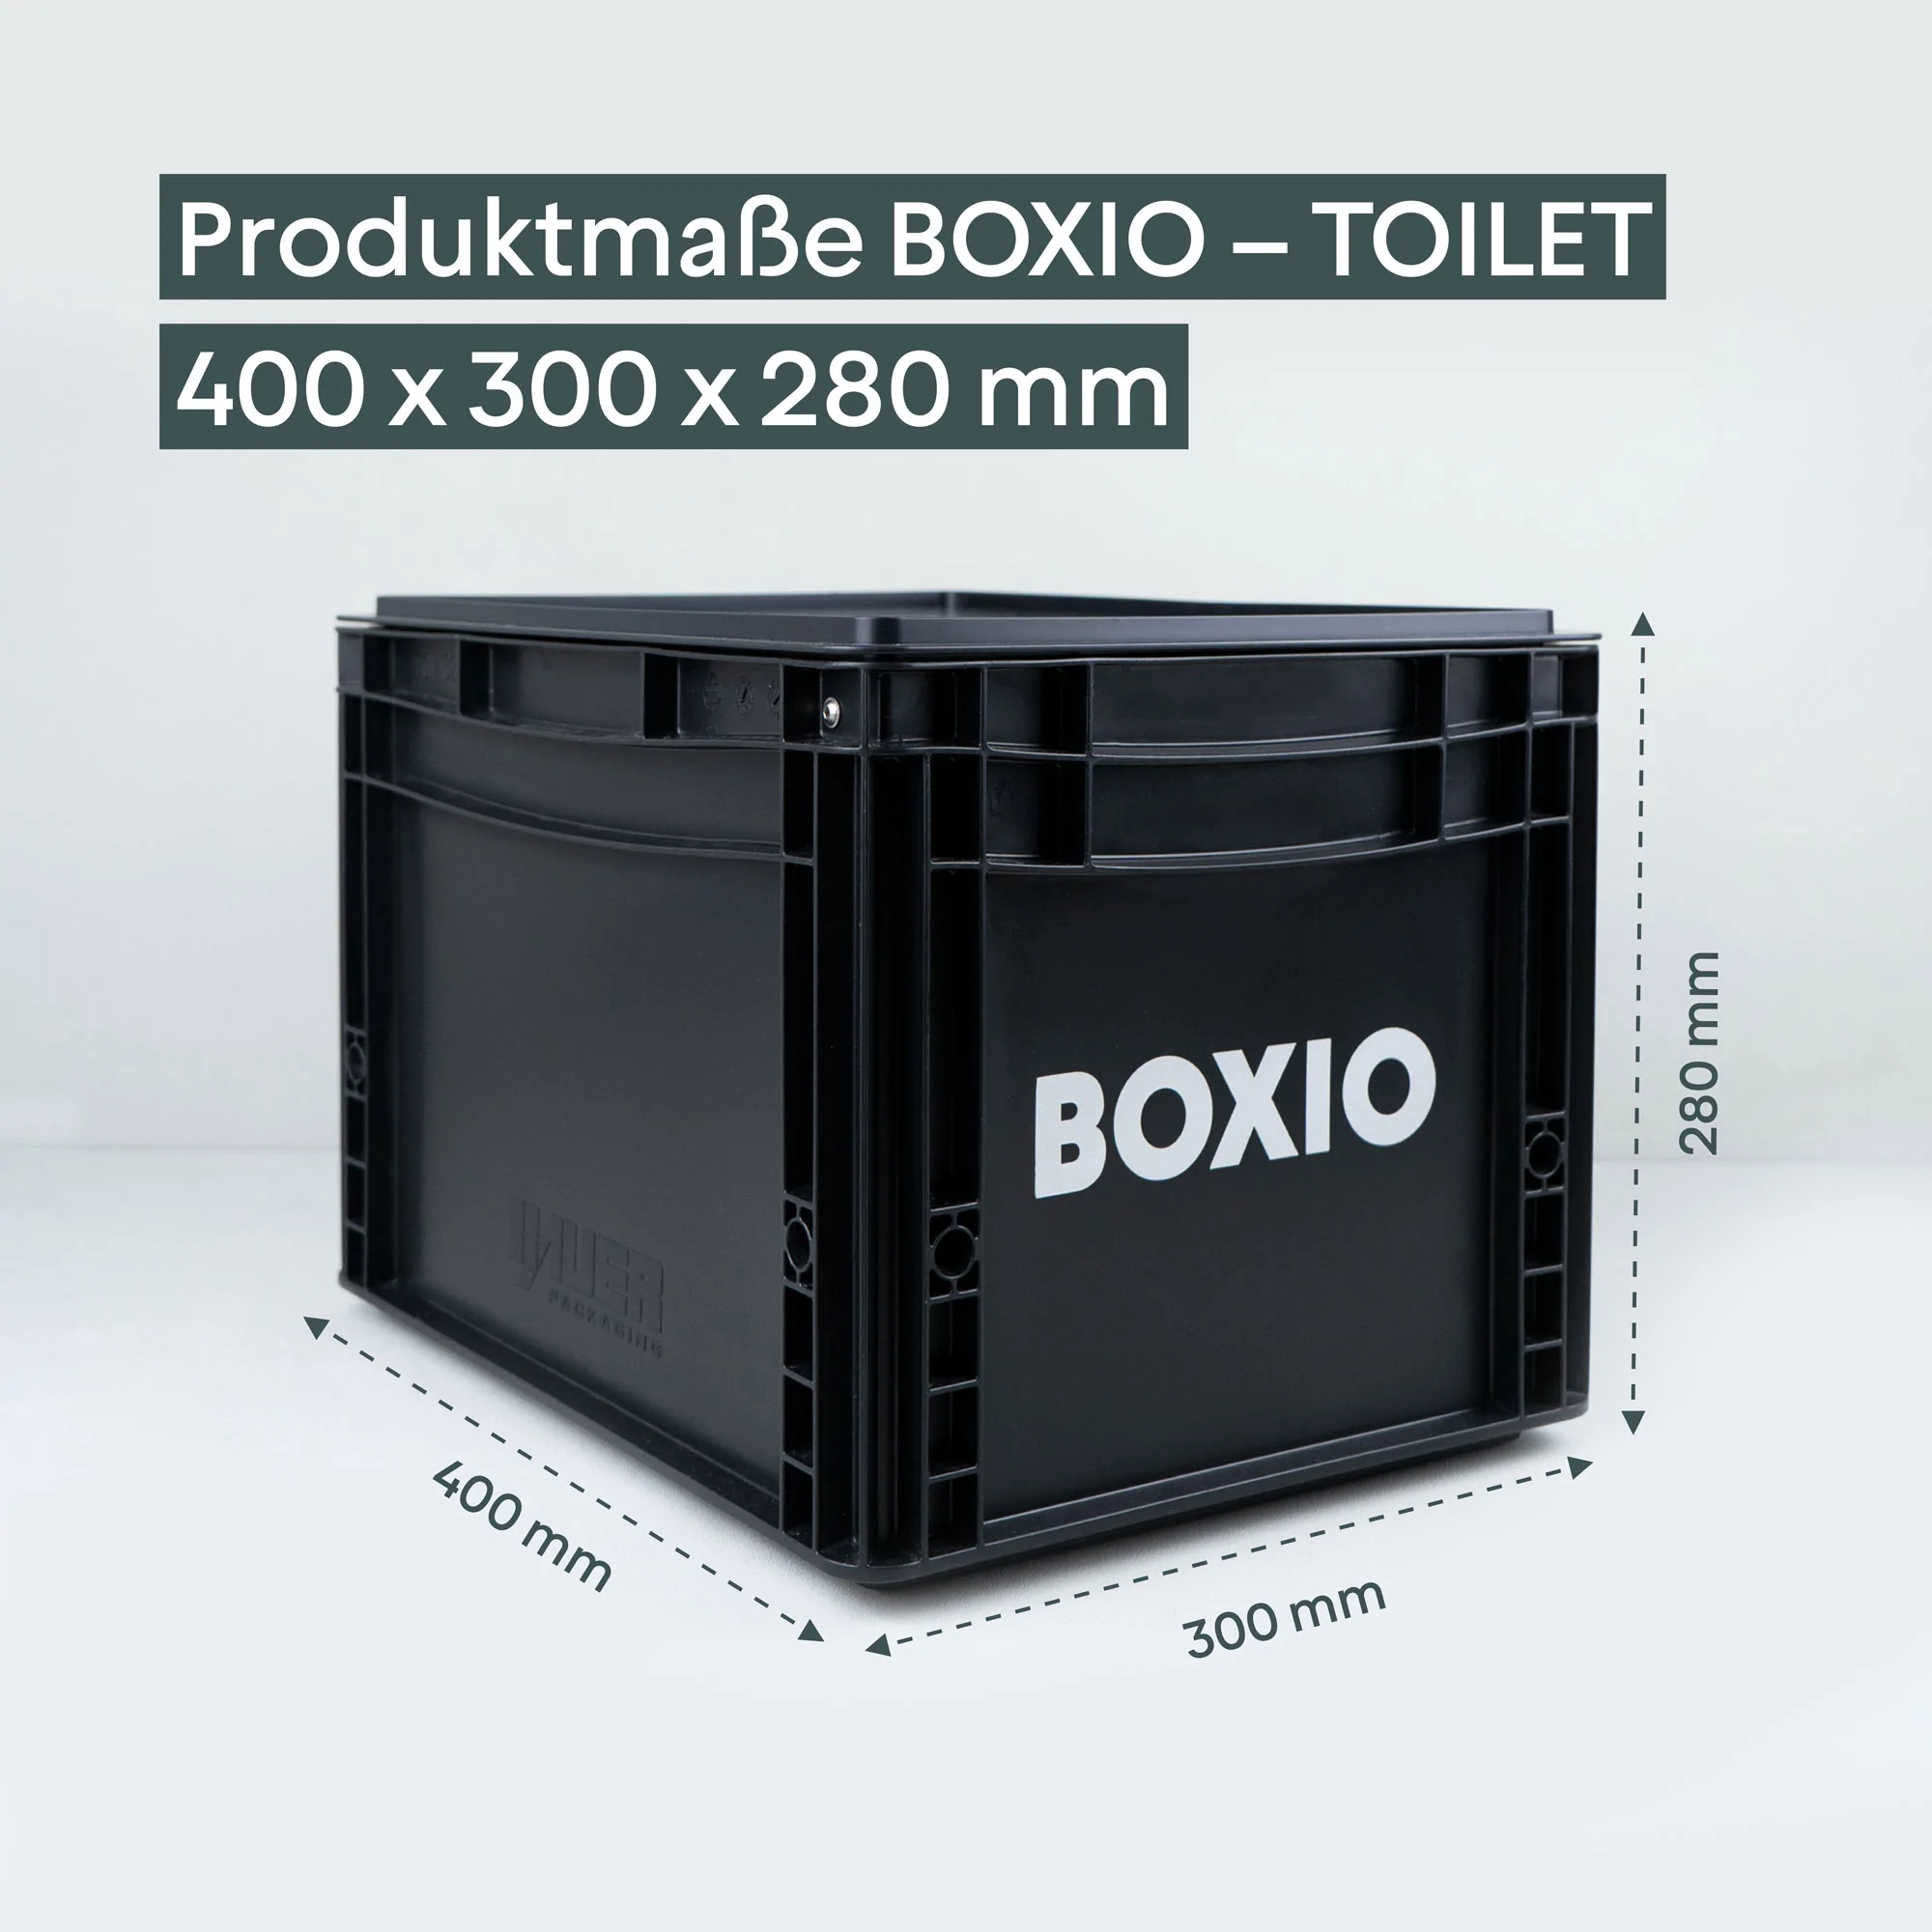 BOXIO – TOILET